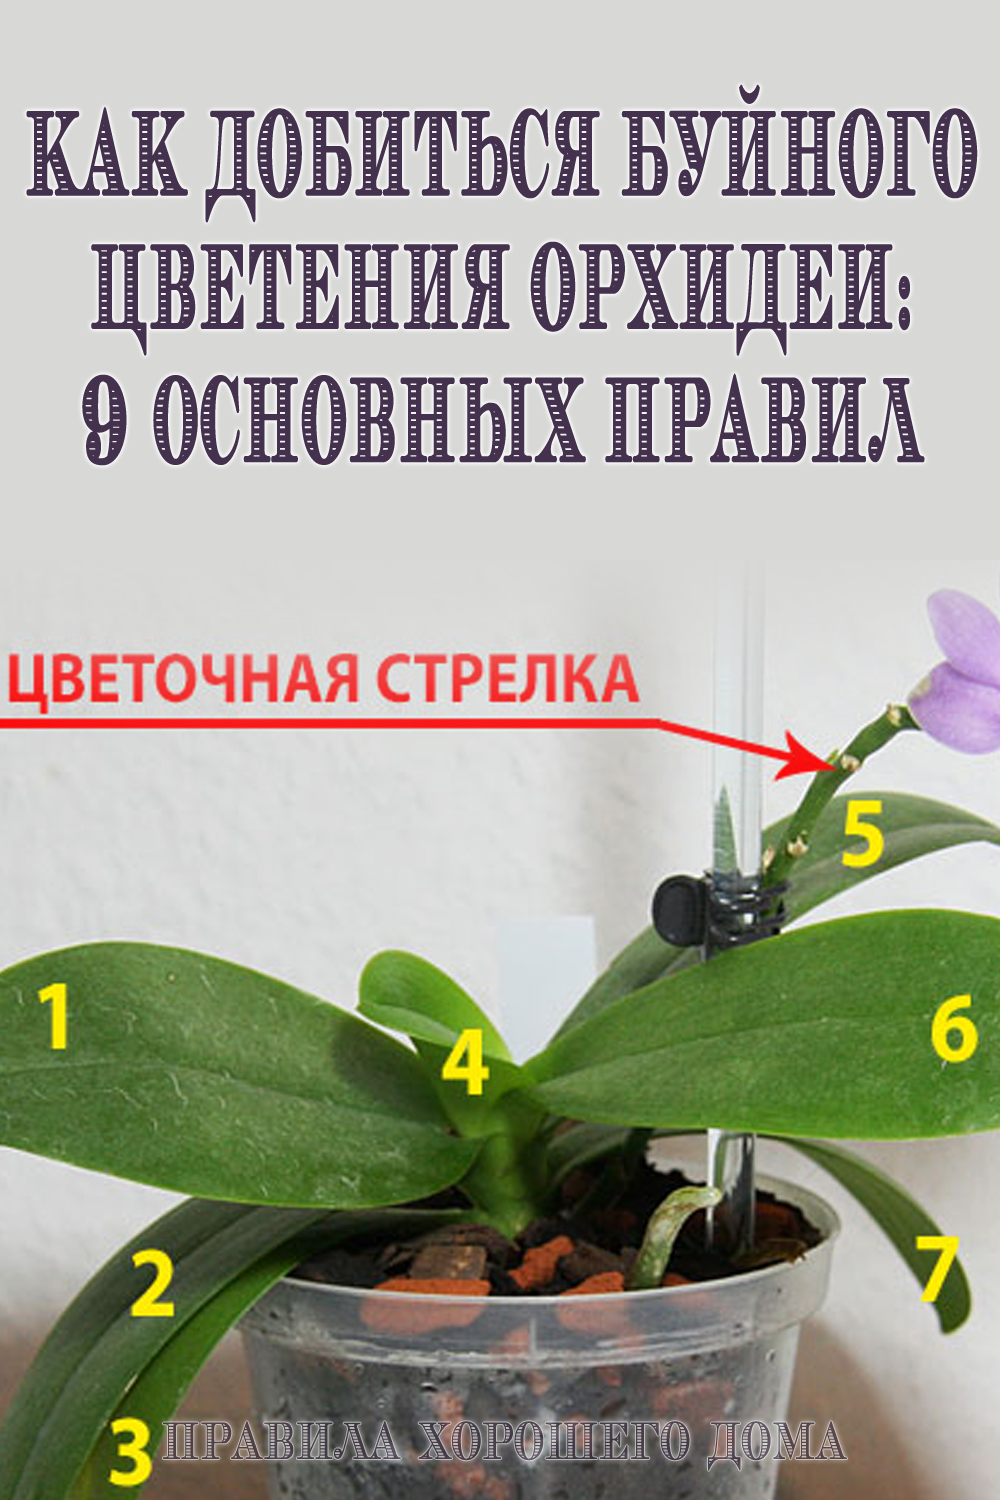 Не цветет орхидея selo.guru — интернет портал о сельском хозяйстве